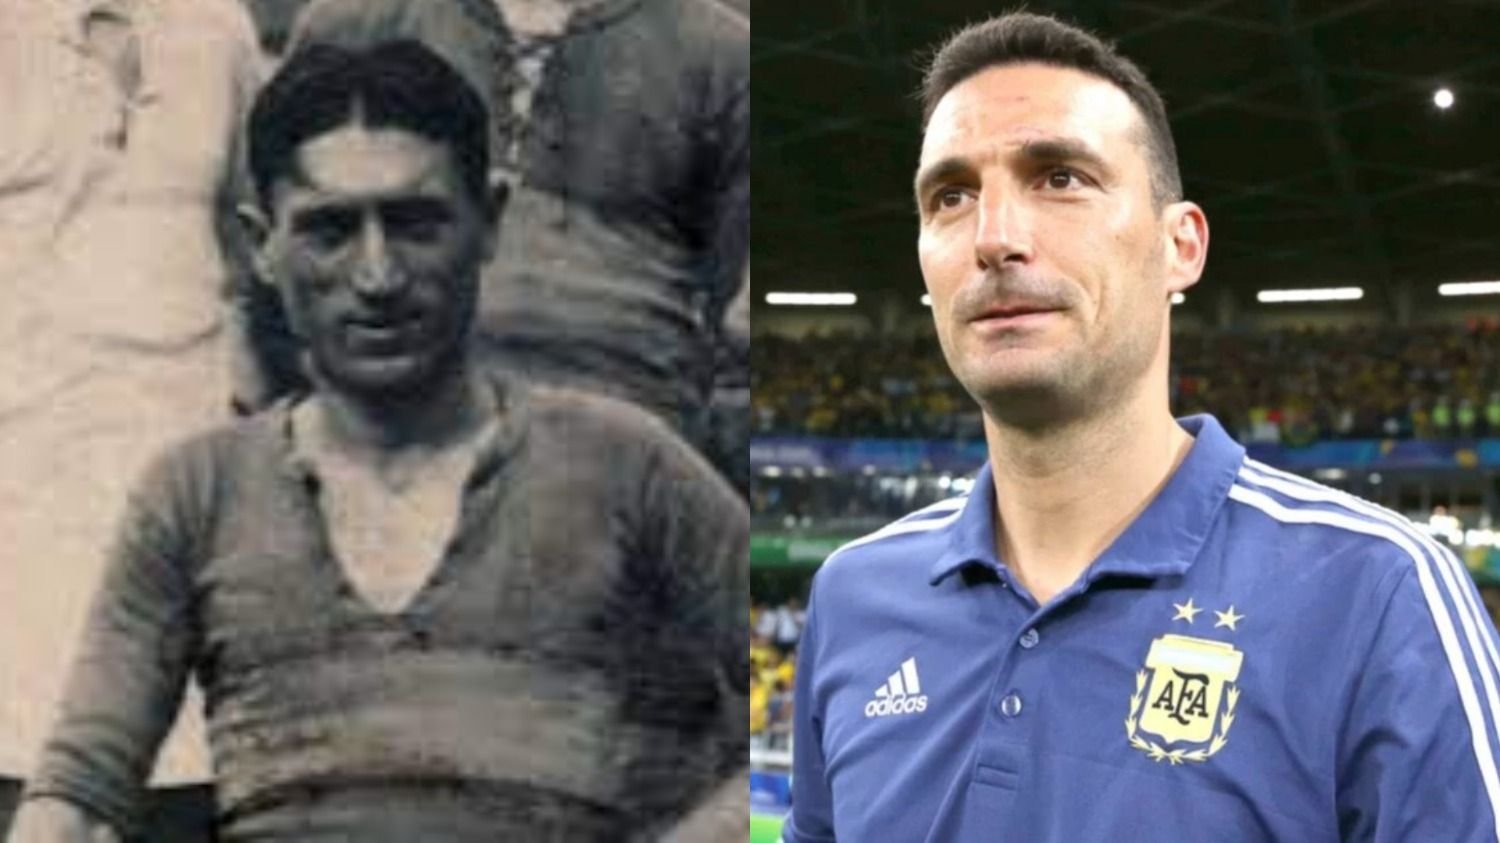 El nacimiento de la selección argentina: La historia del primer